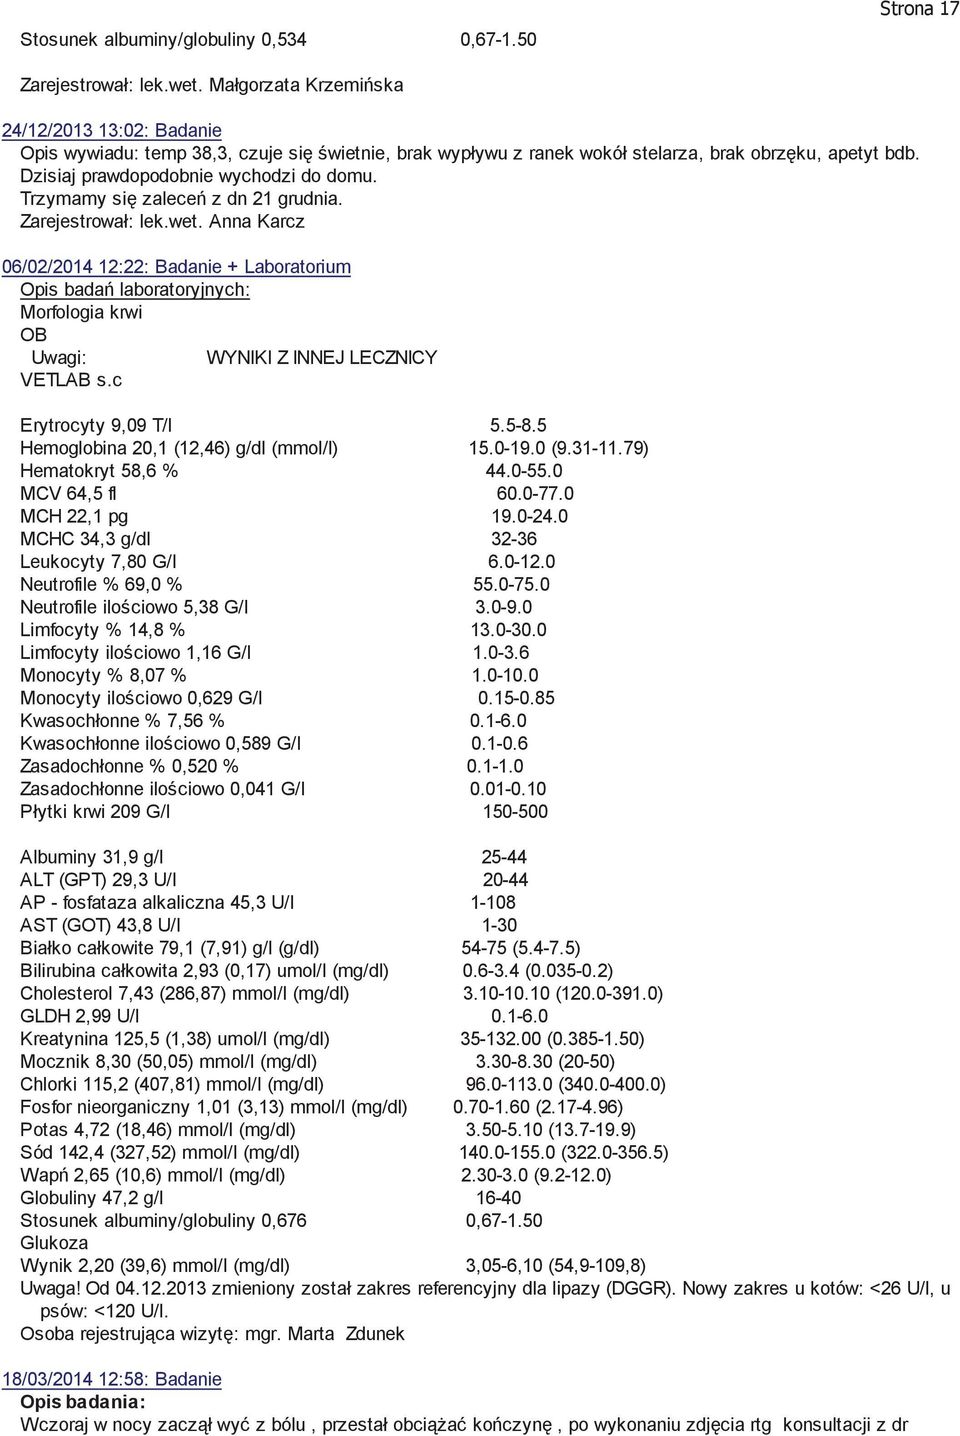 06/02/2014 12:22: Badanie + Laboratorium Opis badań laboratoryjnych: Morfologia krwi OB Uwagi: WYNIKI Z INNEJ LECZNICY VETLAB s.c Erytrocyty 9,09 T/l 5.5-8.5 Hemoglobina 20,1 (12,46) g/dl (mmol/l) 15.